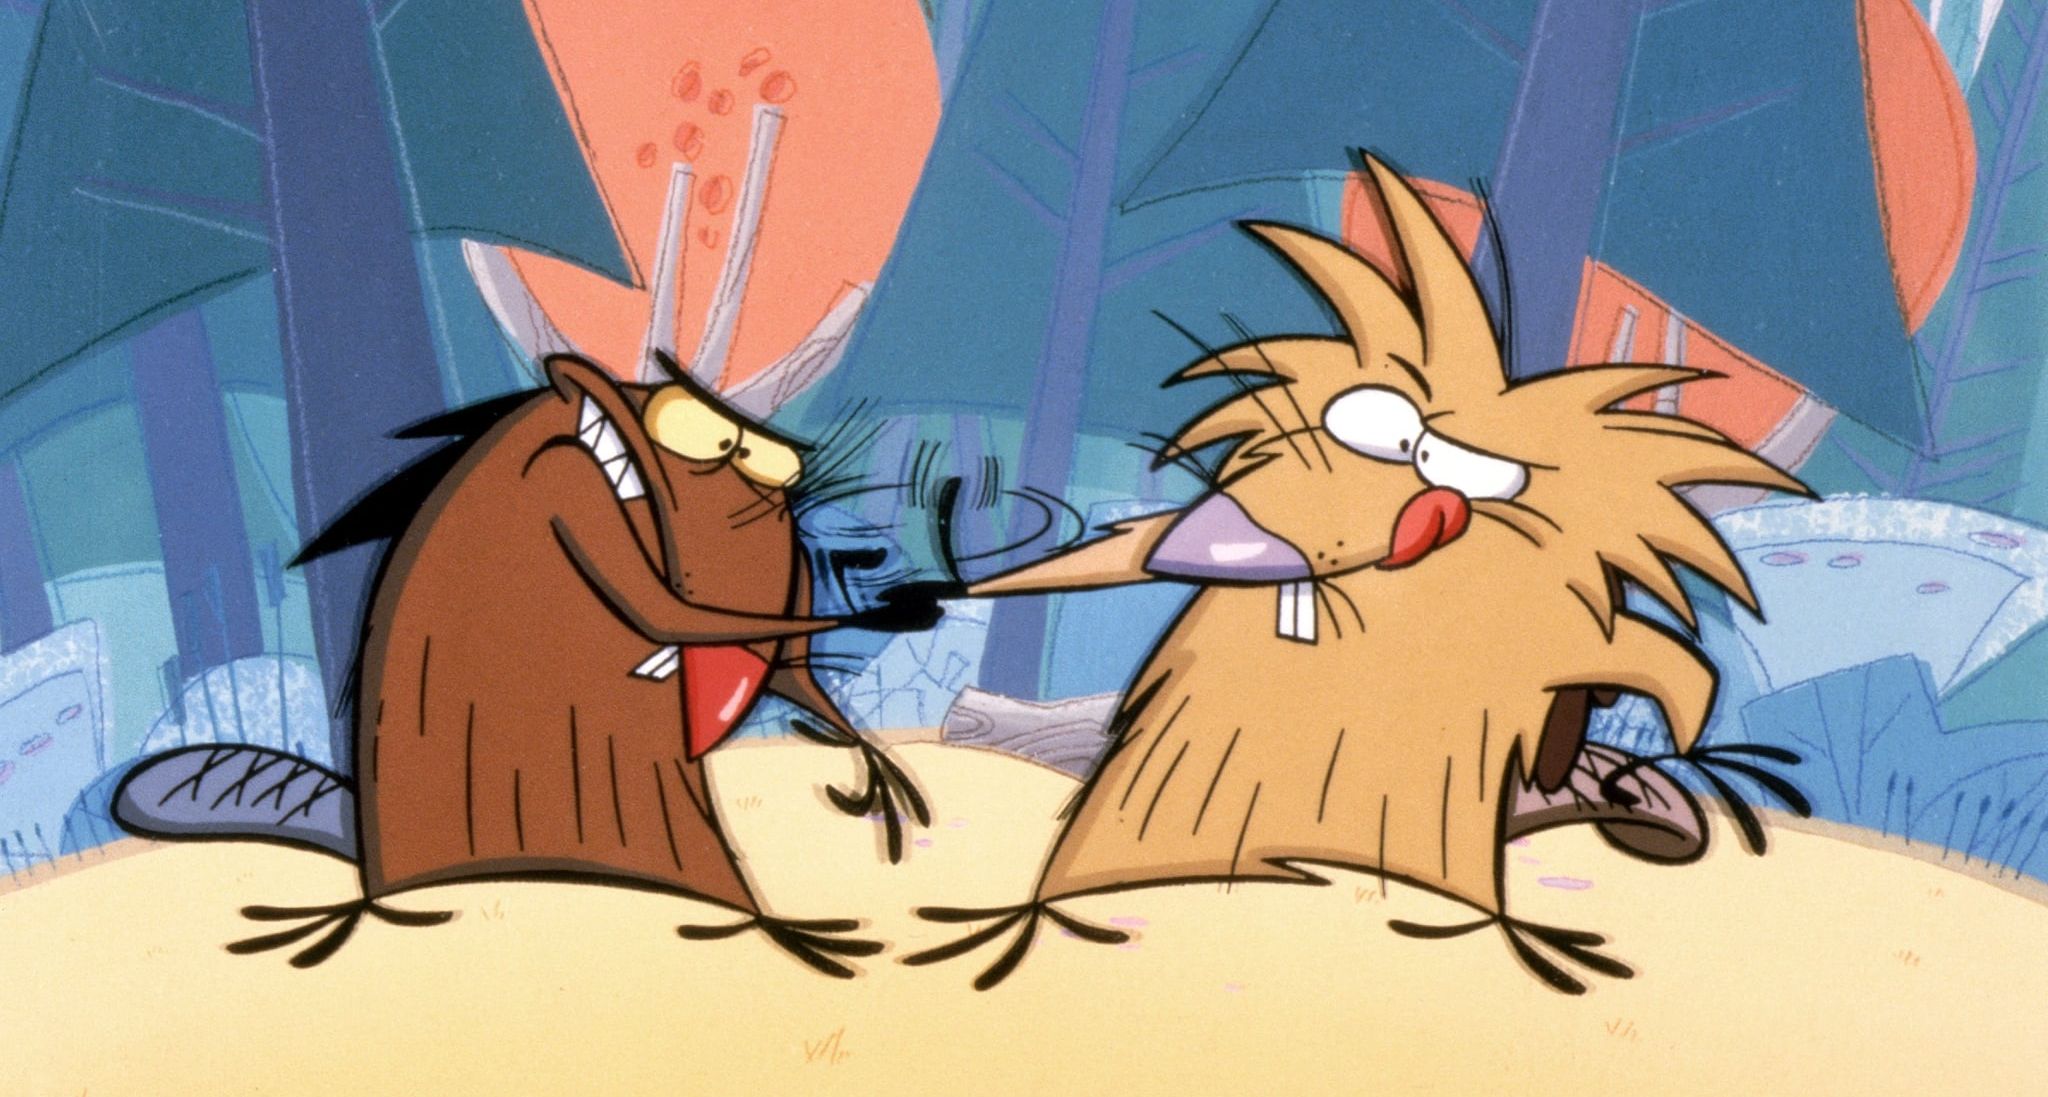 Daggett and Norbert from Nickelodeon's Angry Beavers cartoon series.